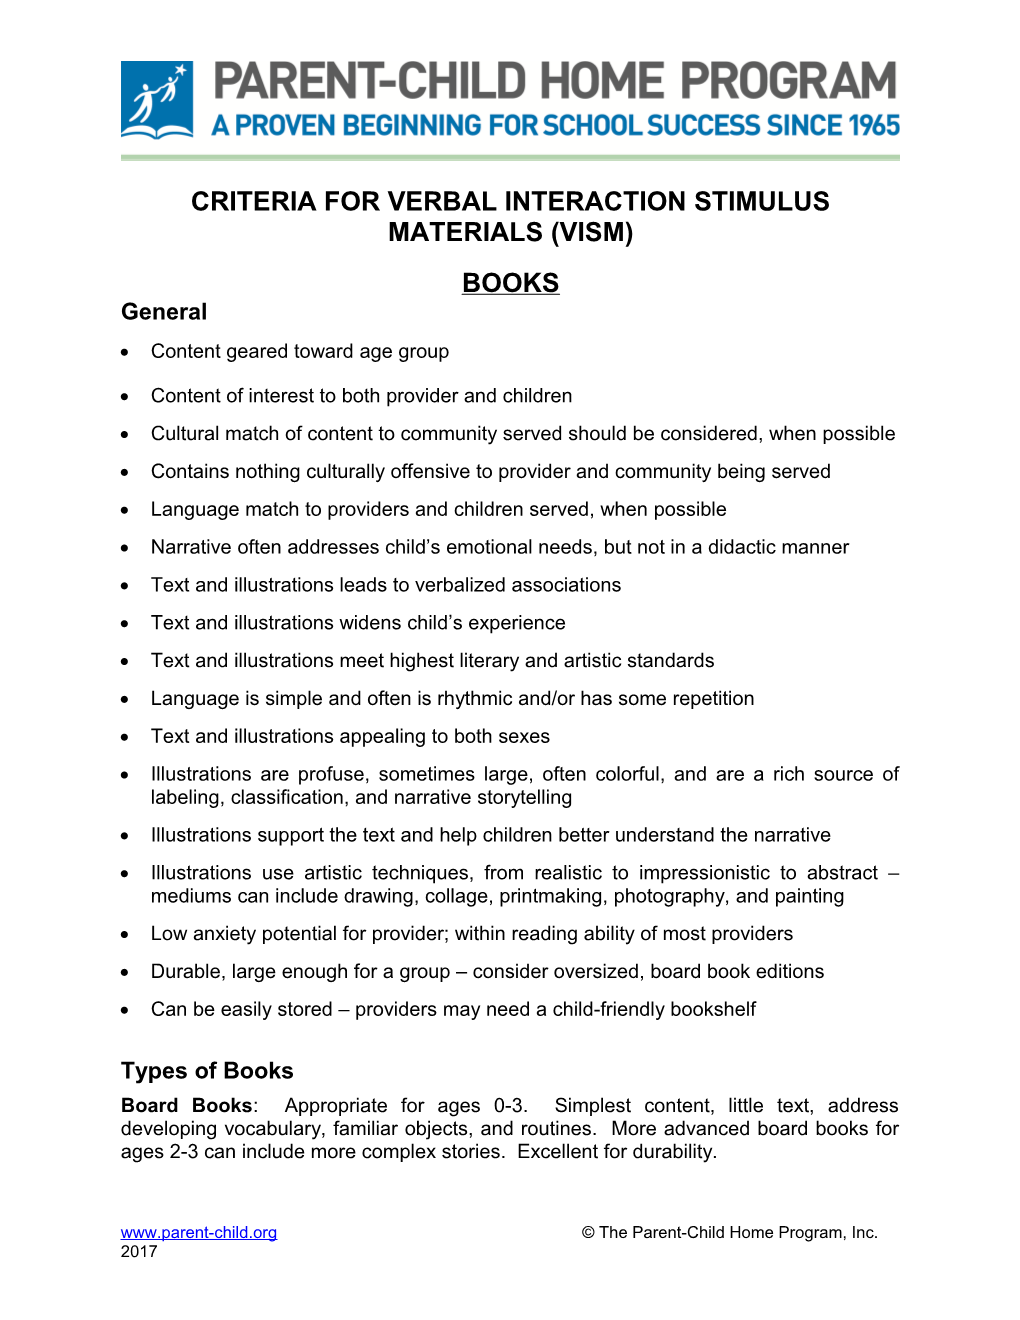 Criteria for Verbal Interaction Stimulus Materials (Vism)